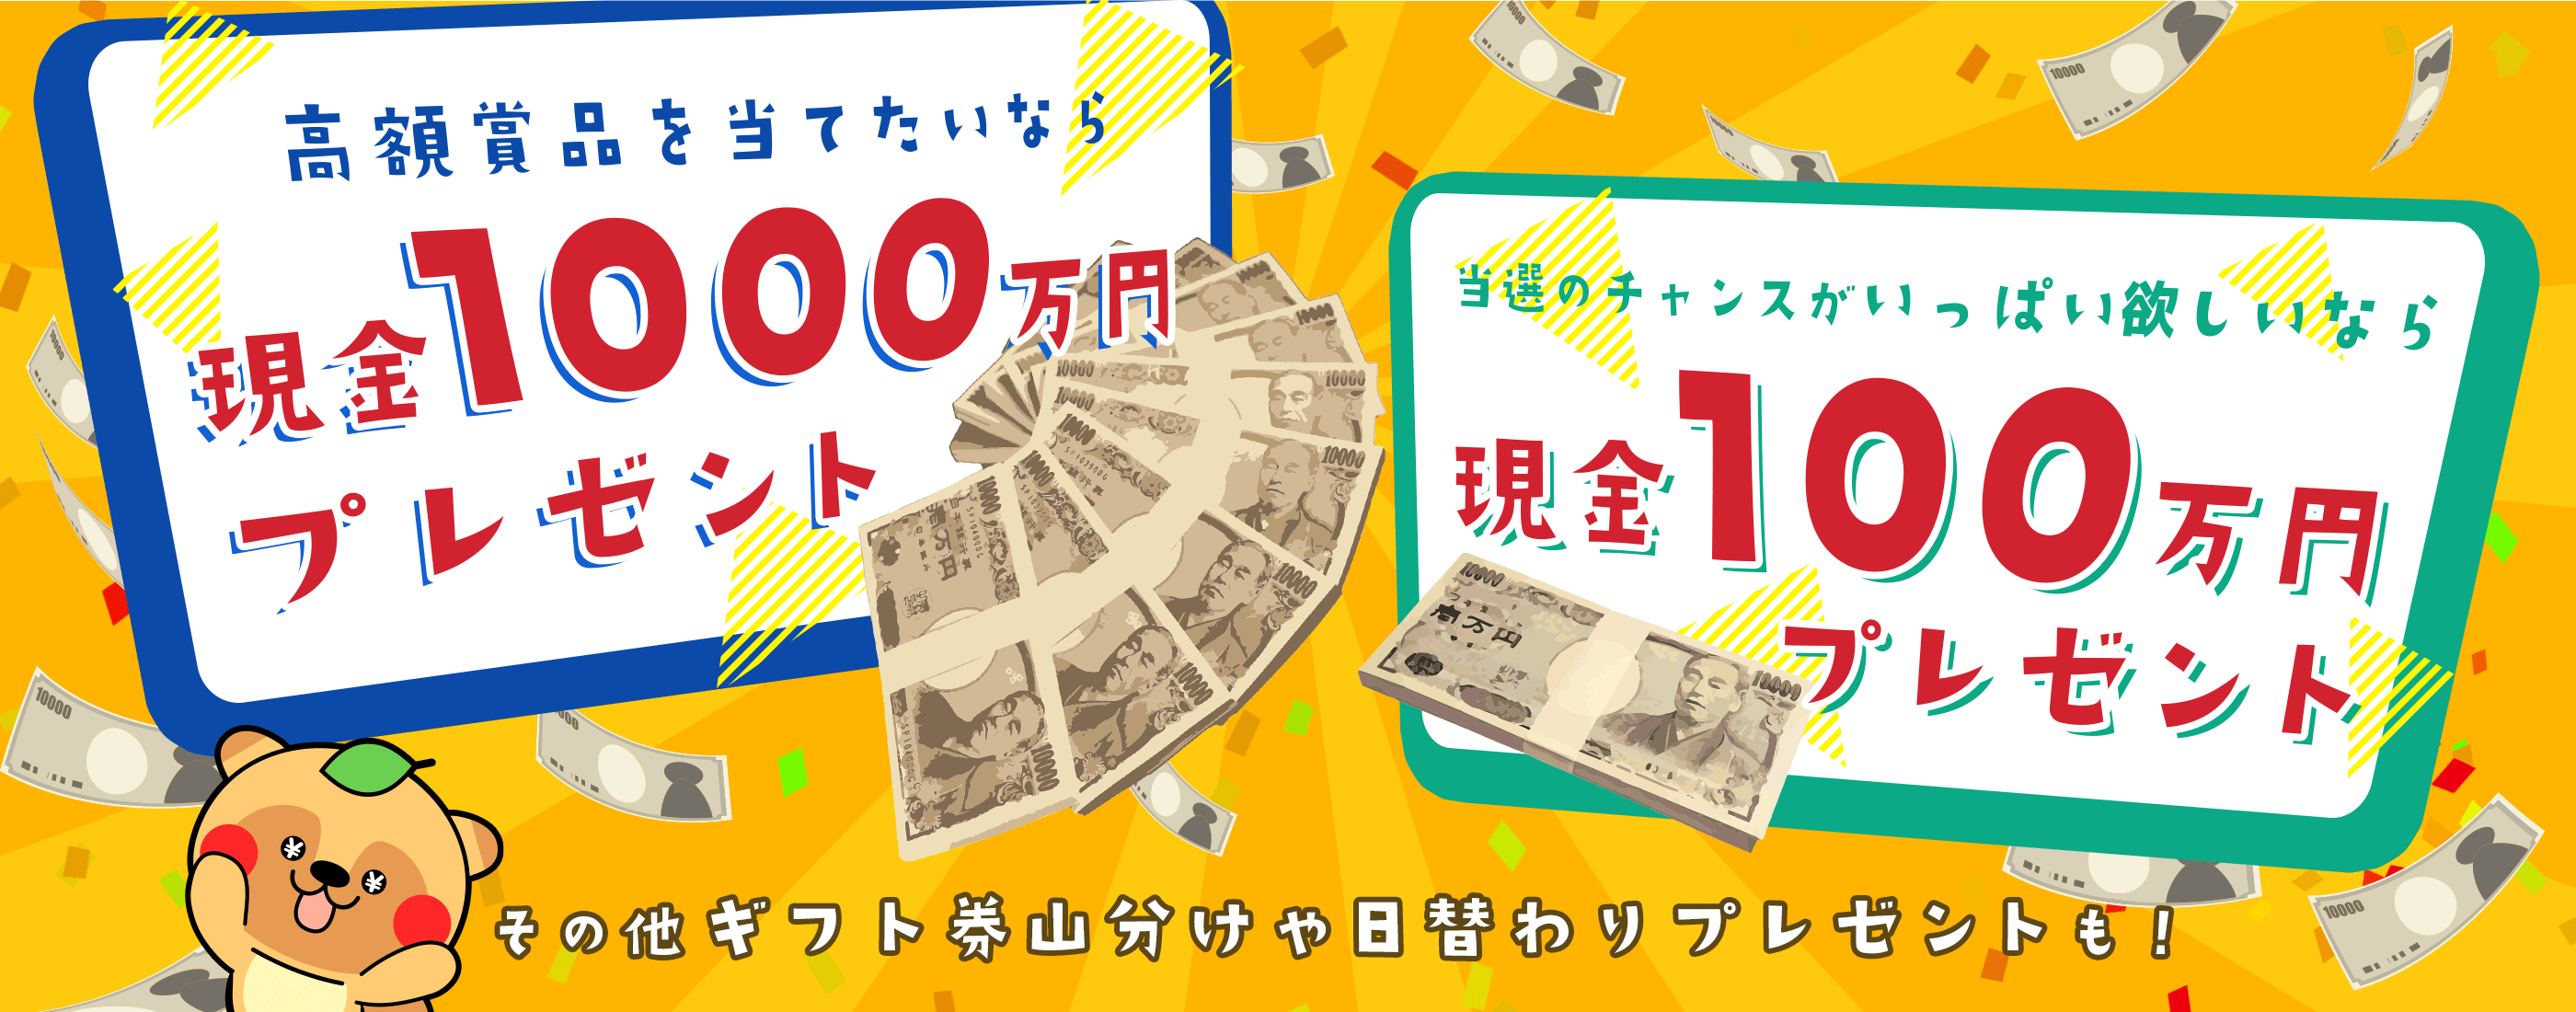 ドリームメールは、日本最大級の懸賞サイトです！高額賞品を当てたいなら現金1000万円プレゼント！当選のチャンスがいっぱい欲しいなら現金100万円プレゼント！その他amazonギフト券や日替わりプレゼントも！